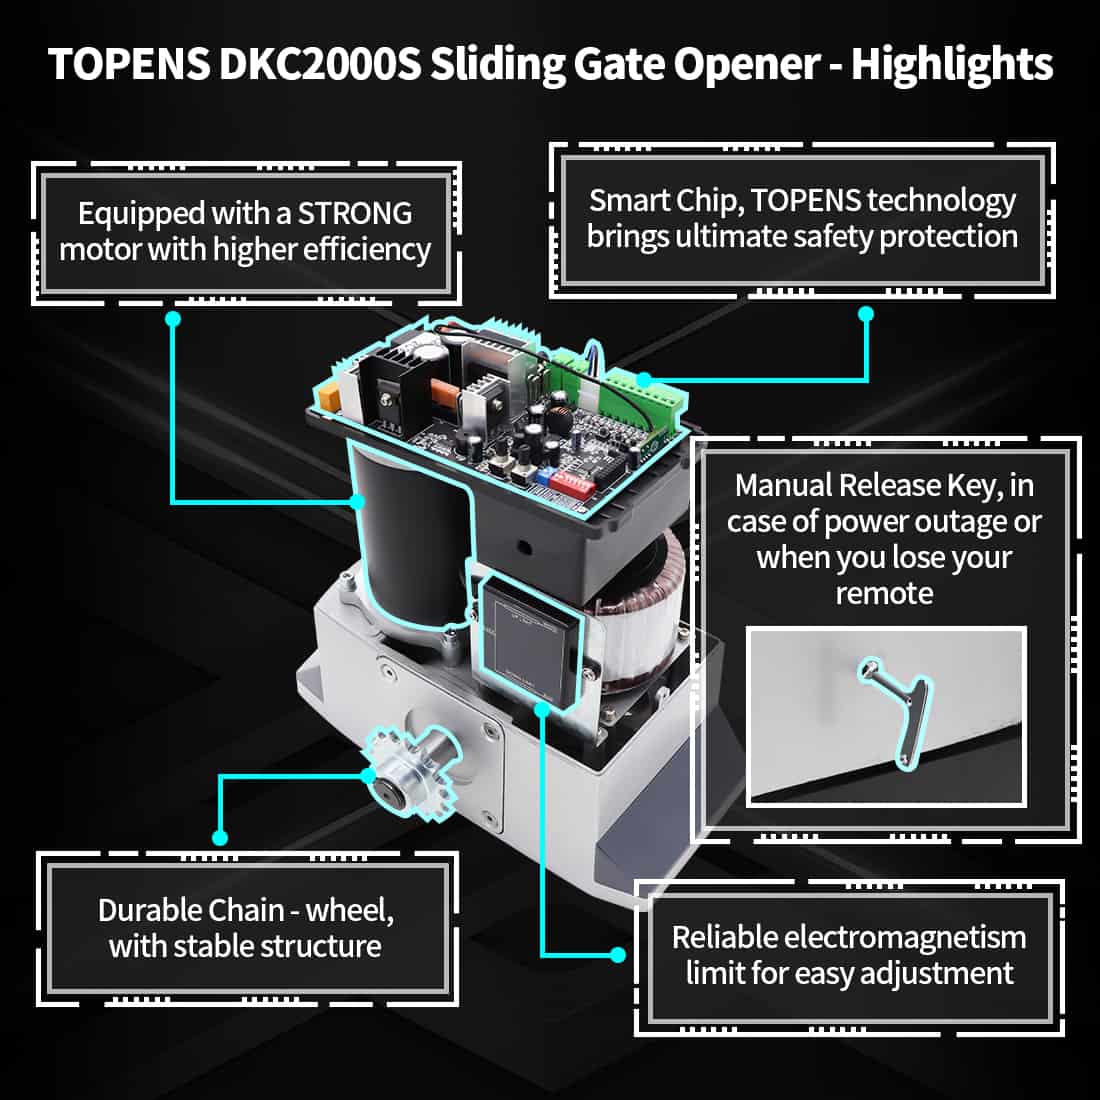 DKC2000S Solar Slide Gate Opener Kit with Strong Motor